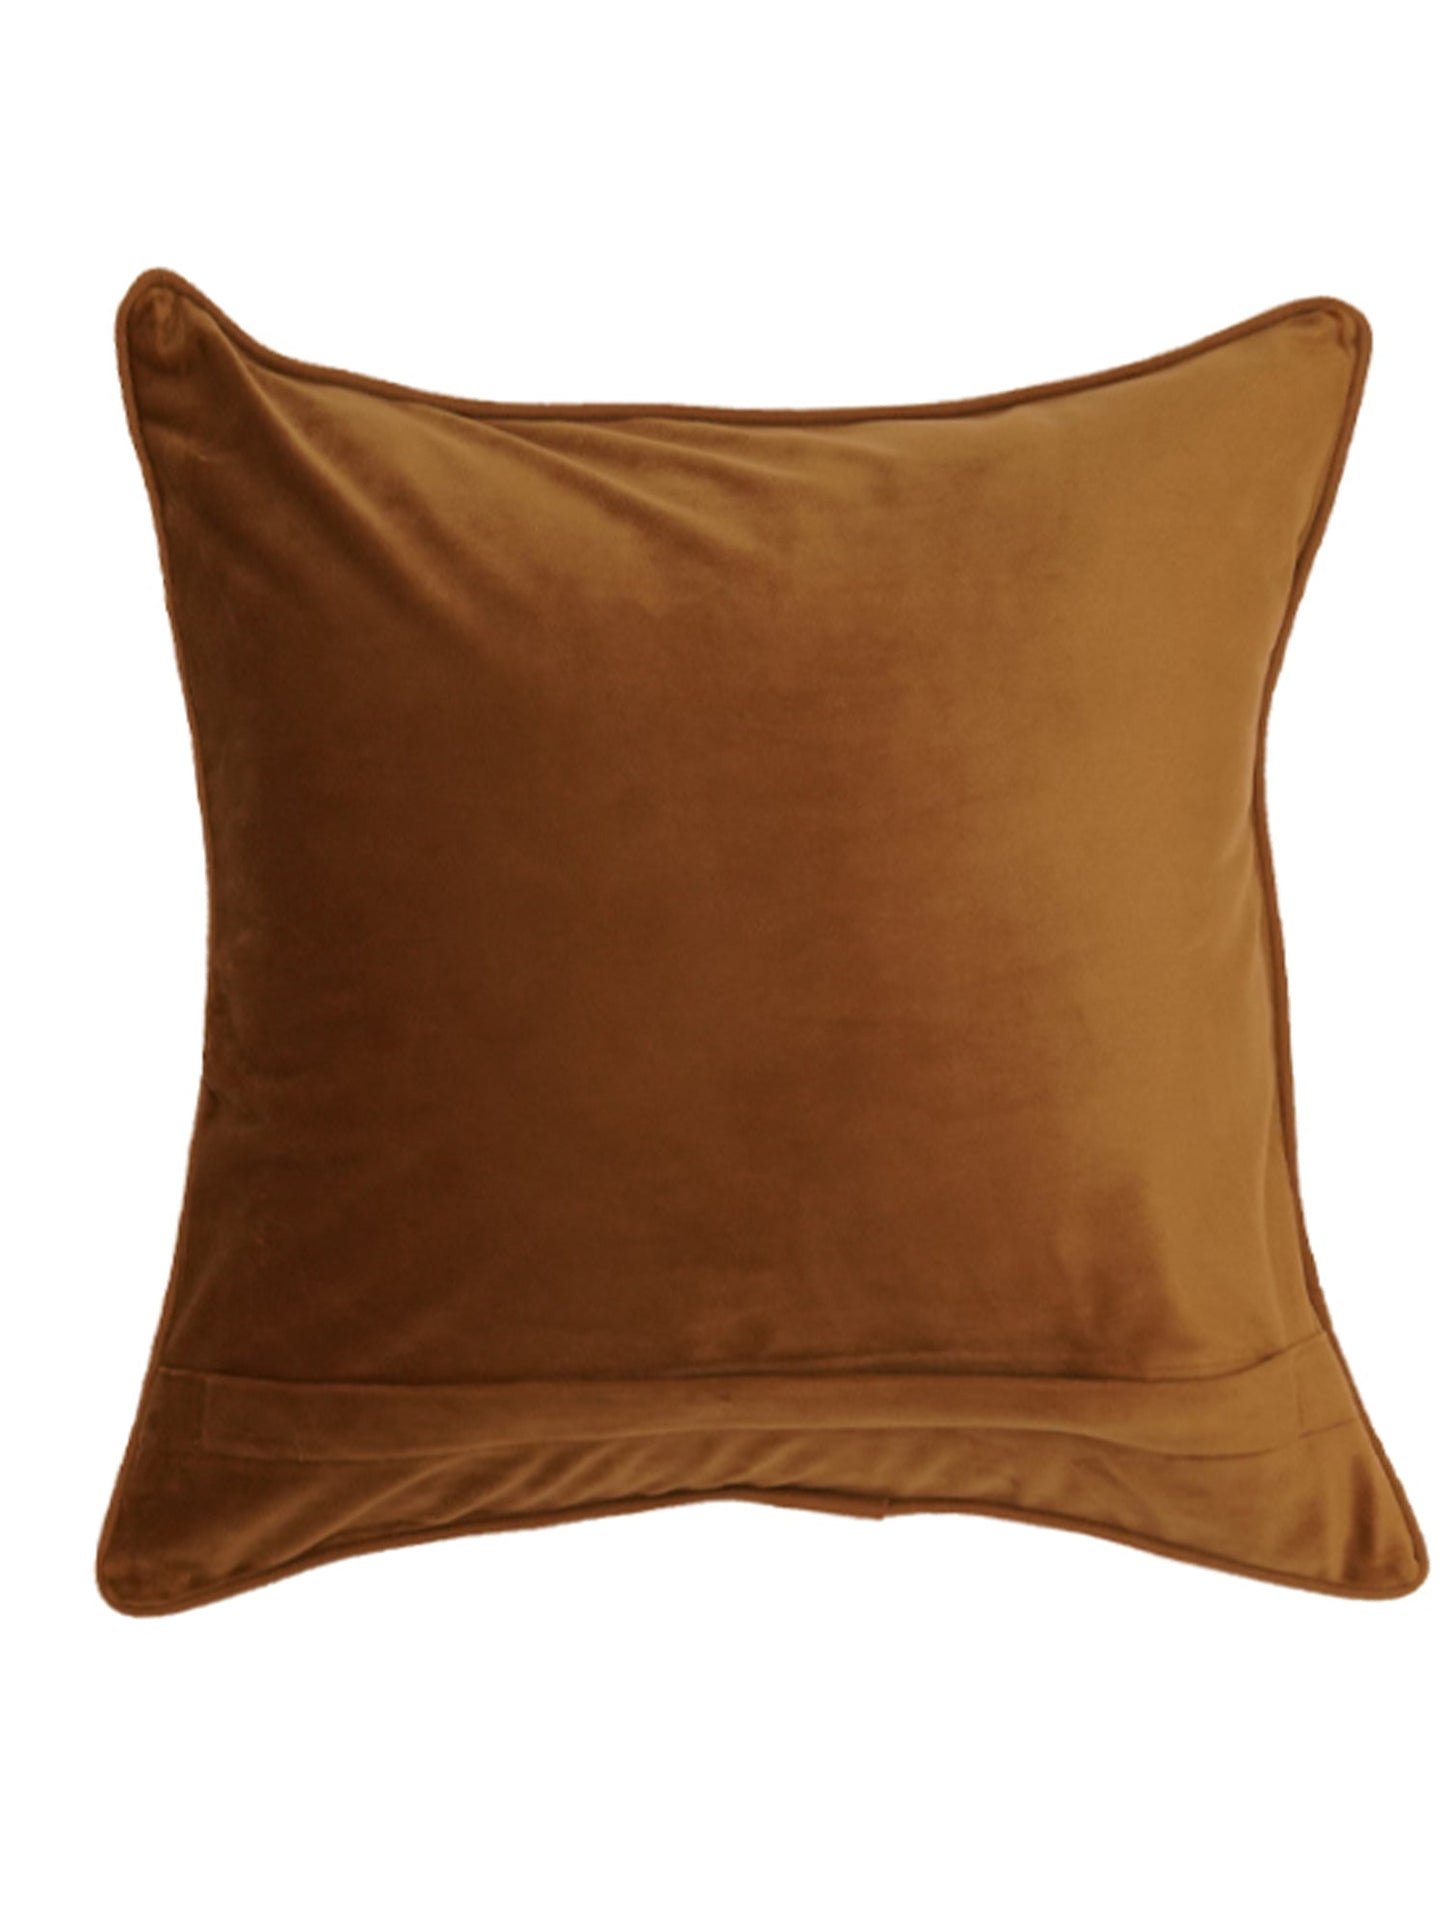 Cushion Cover Velvet  Golden Brown - 20"X 20"